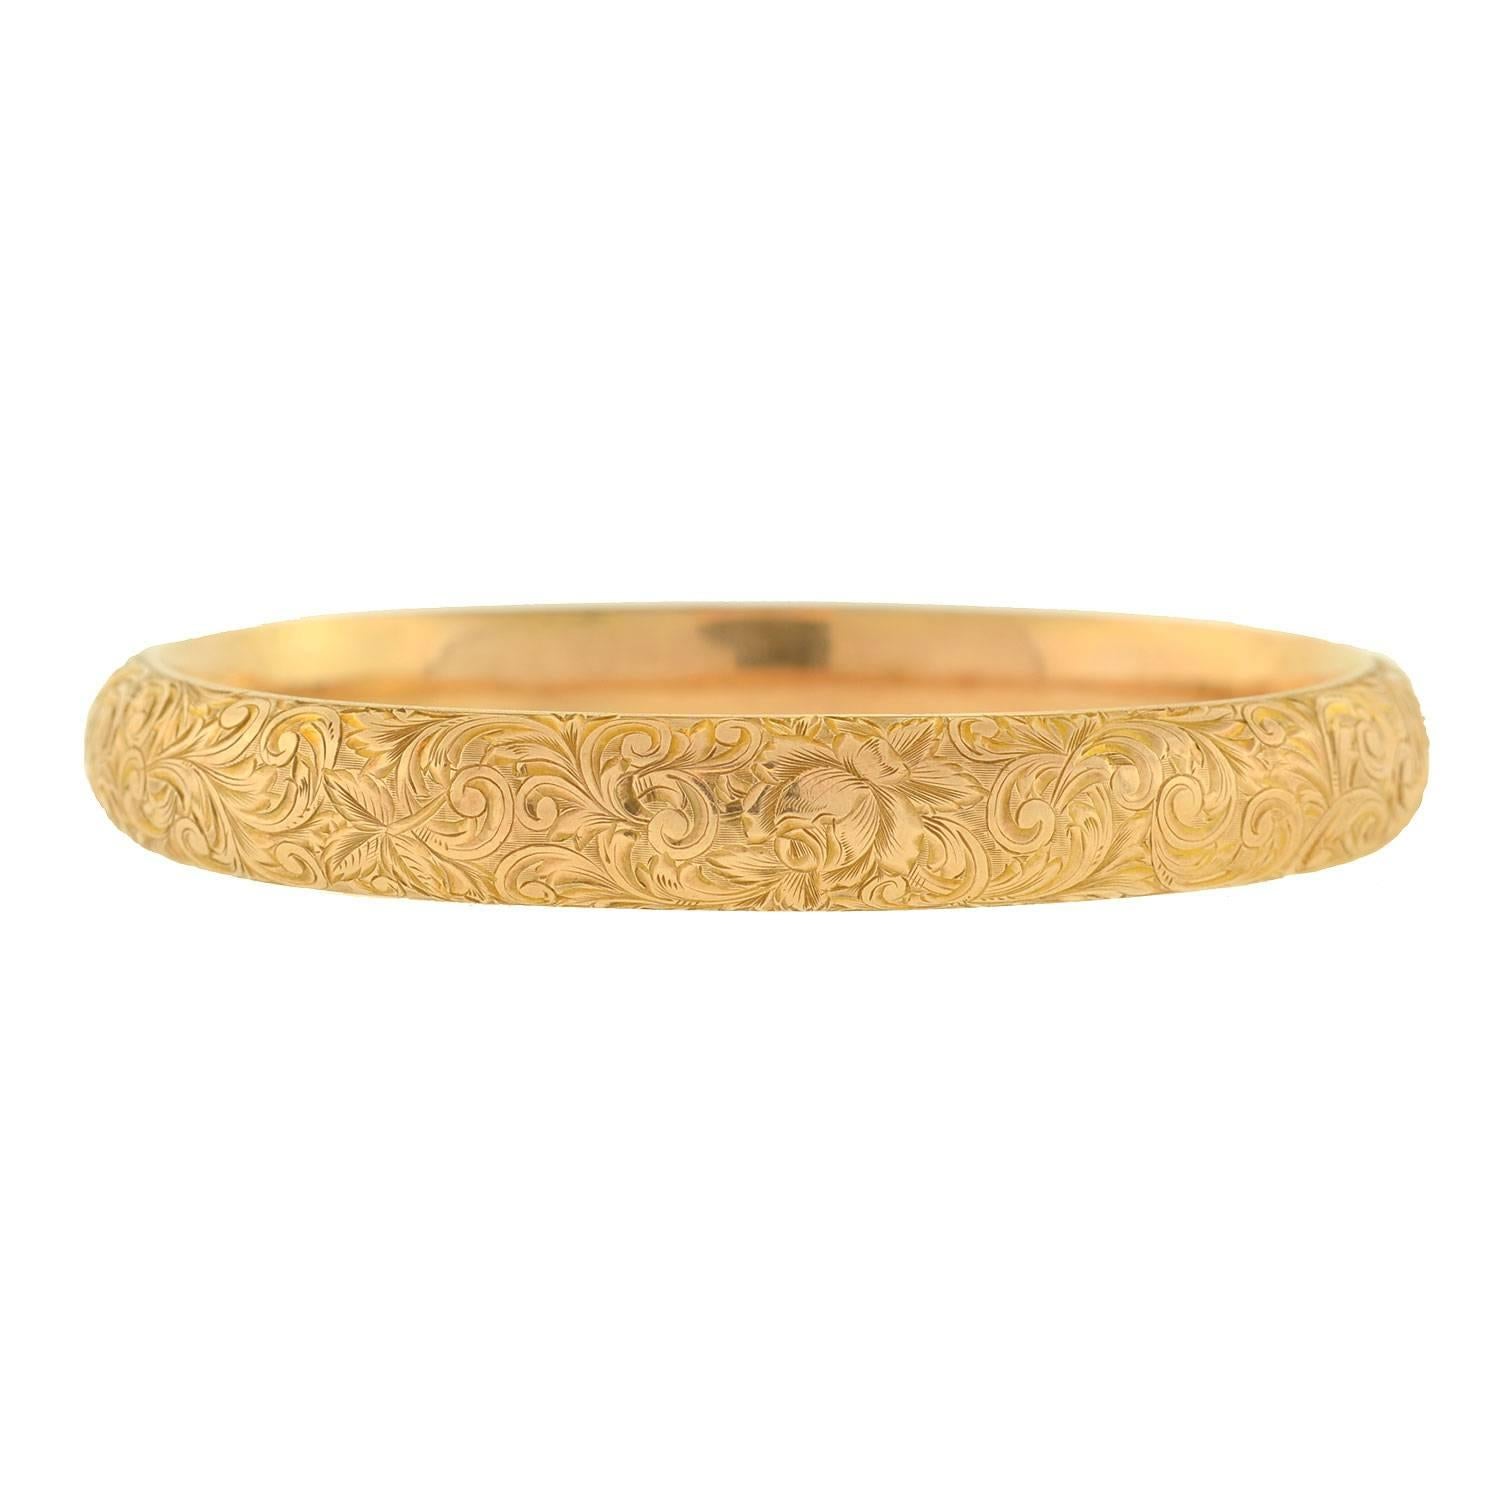 Women's Riker Brothers Art Nouveau Etched Floral Gold Bracelet